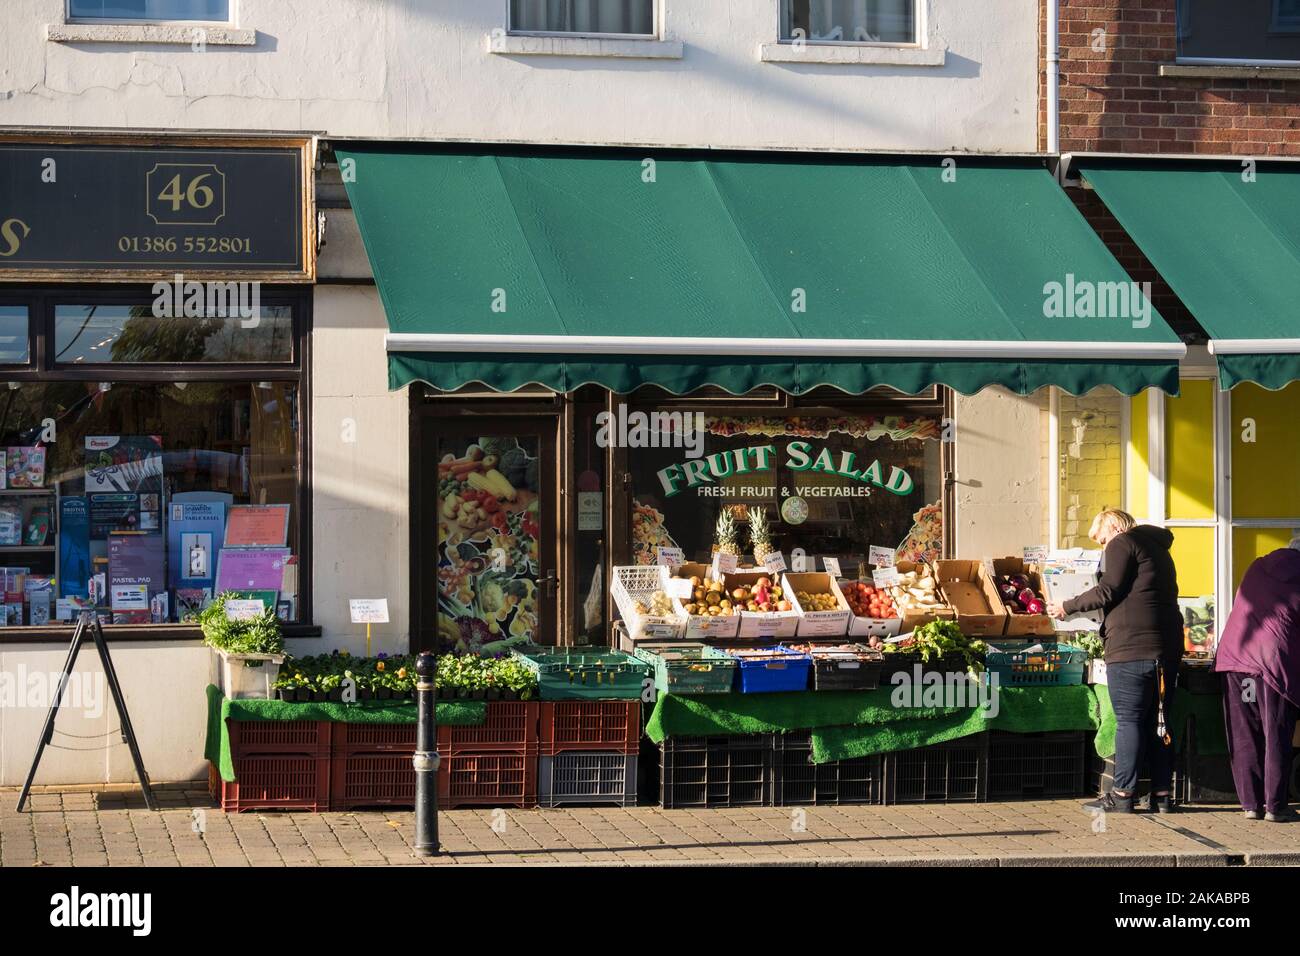 Vert petite épicerie vendant des fruits et légumes frais sur l'affichage extérieur. High Street, Pershore, Worcestershire, Angleterre, Royaume-Uni, Angleterre Banque D'Images